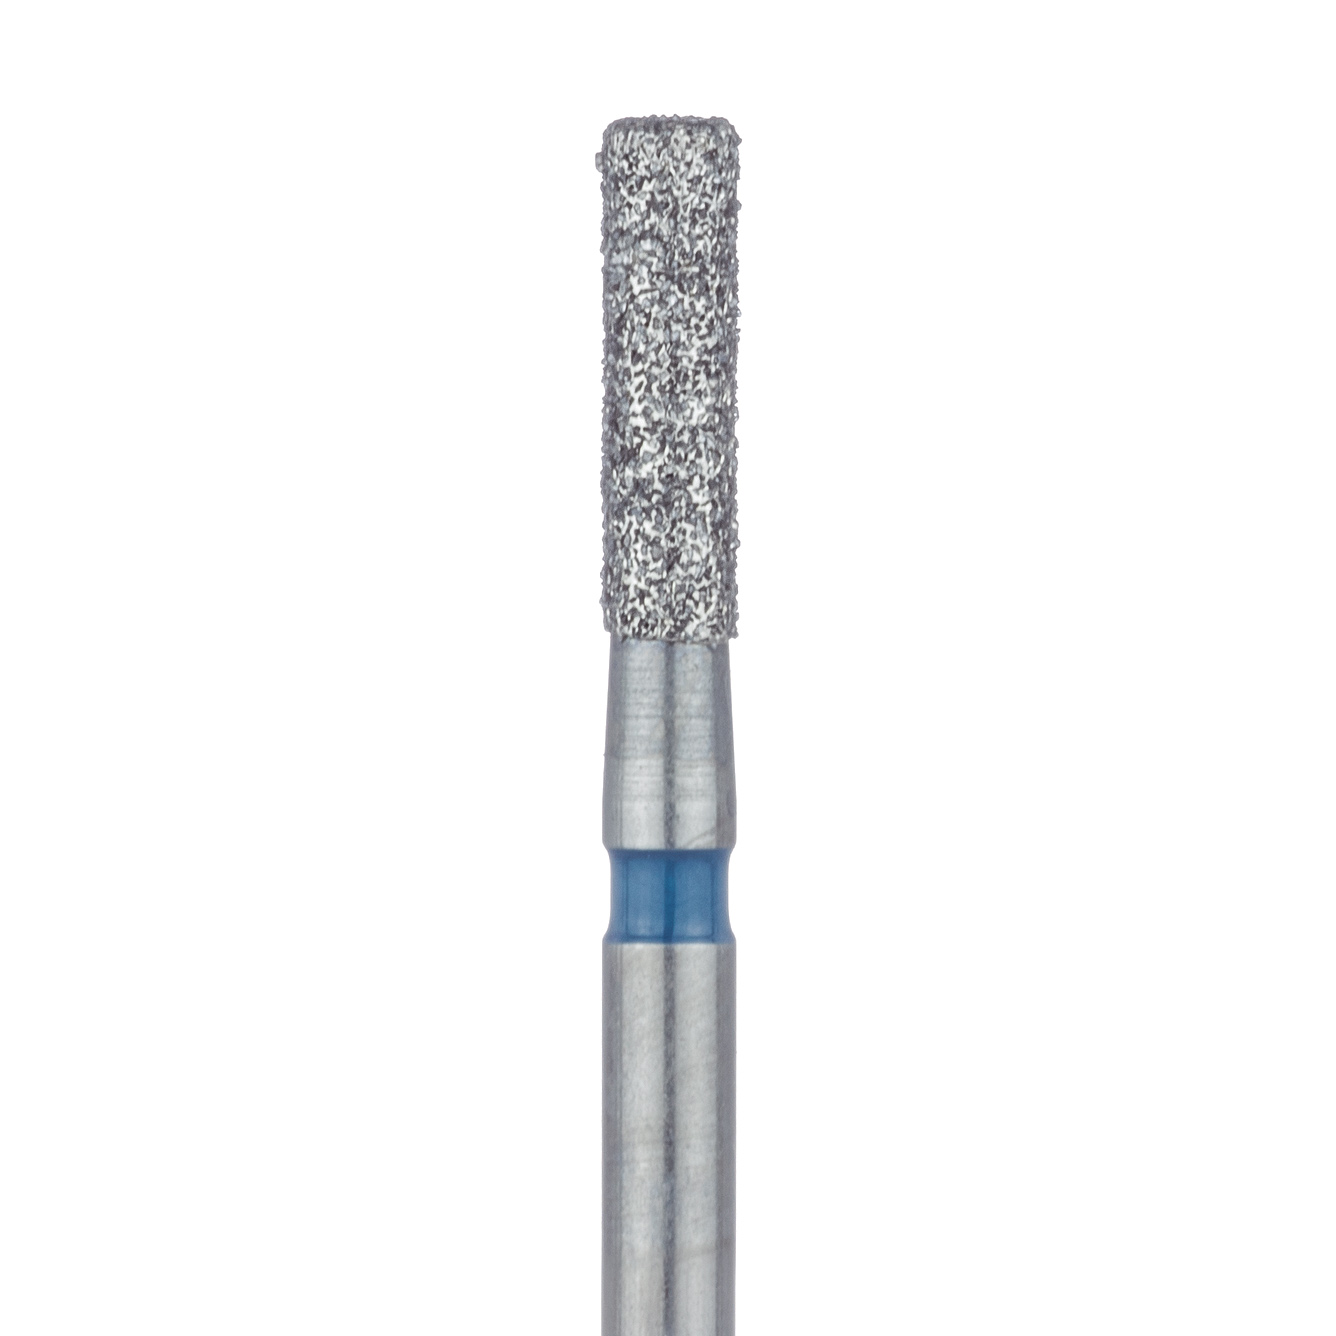 841-016-FG Round Edge Long Cylinder Diamond Bur, 1.6mm Ø, Medium, FG